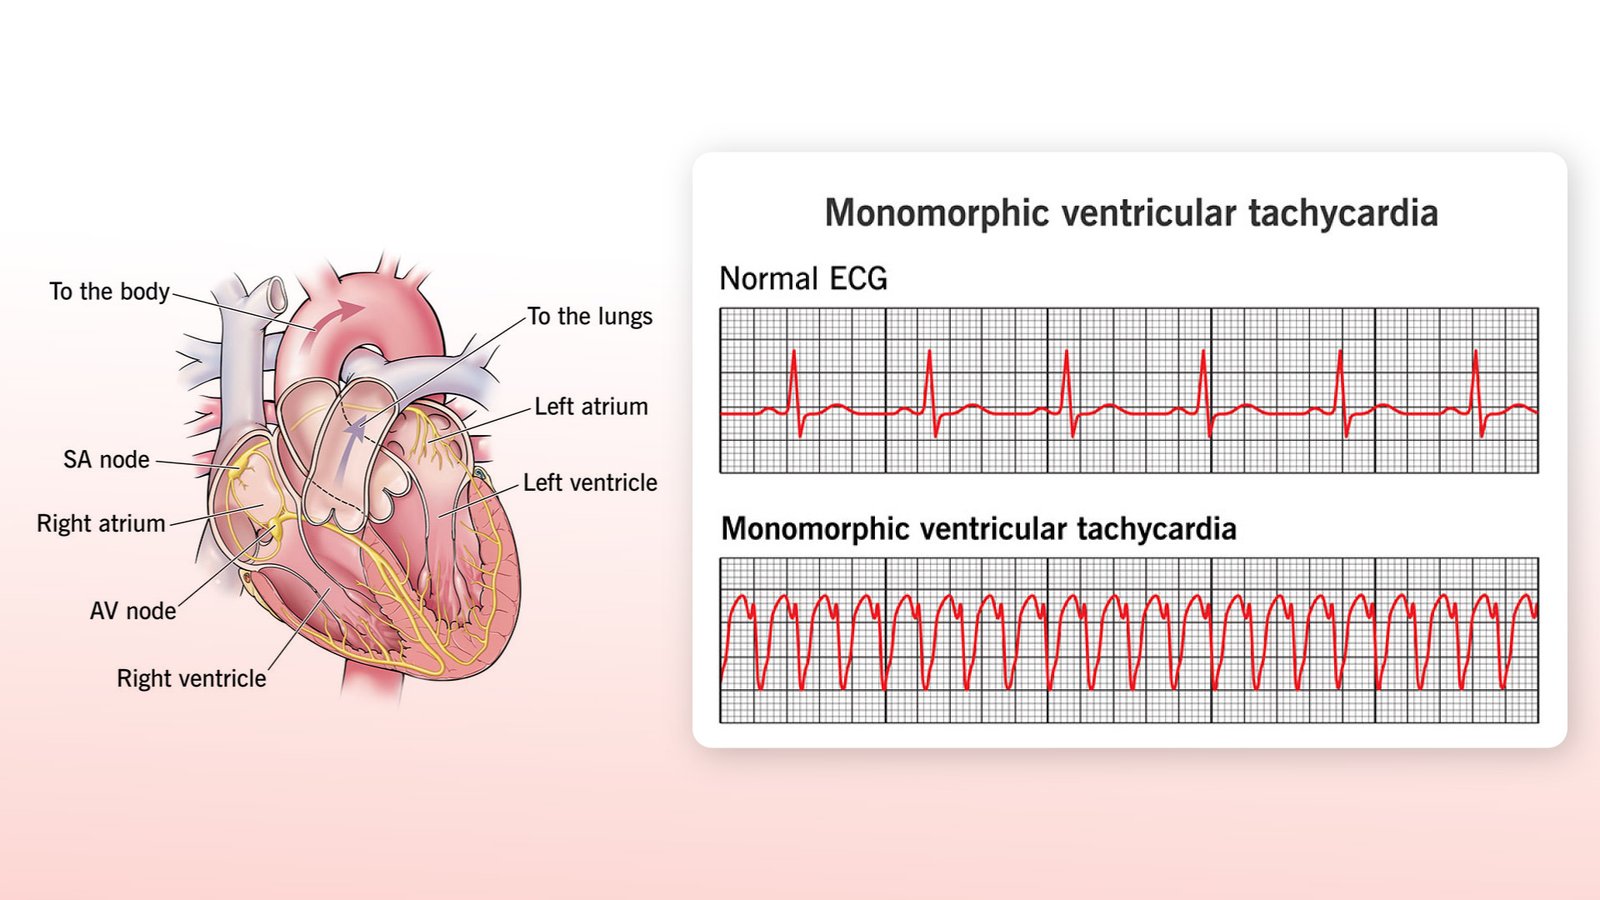 Monomorphic Ventricular Tachycardia